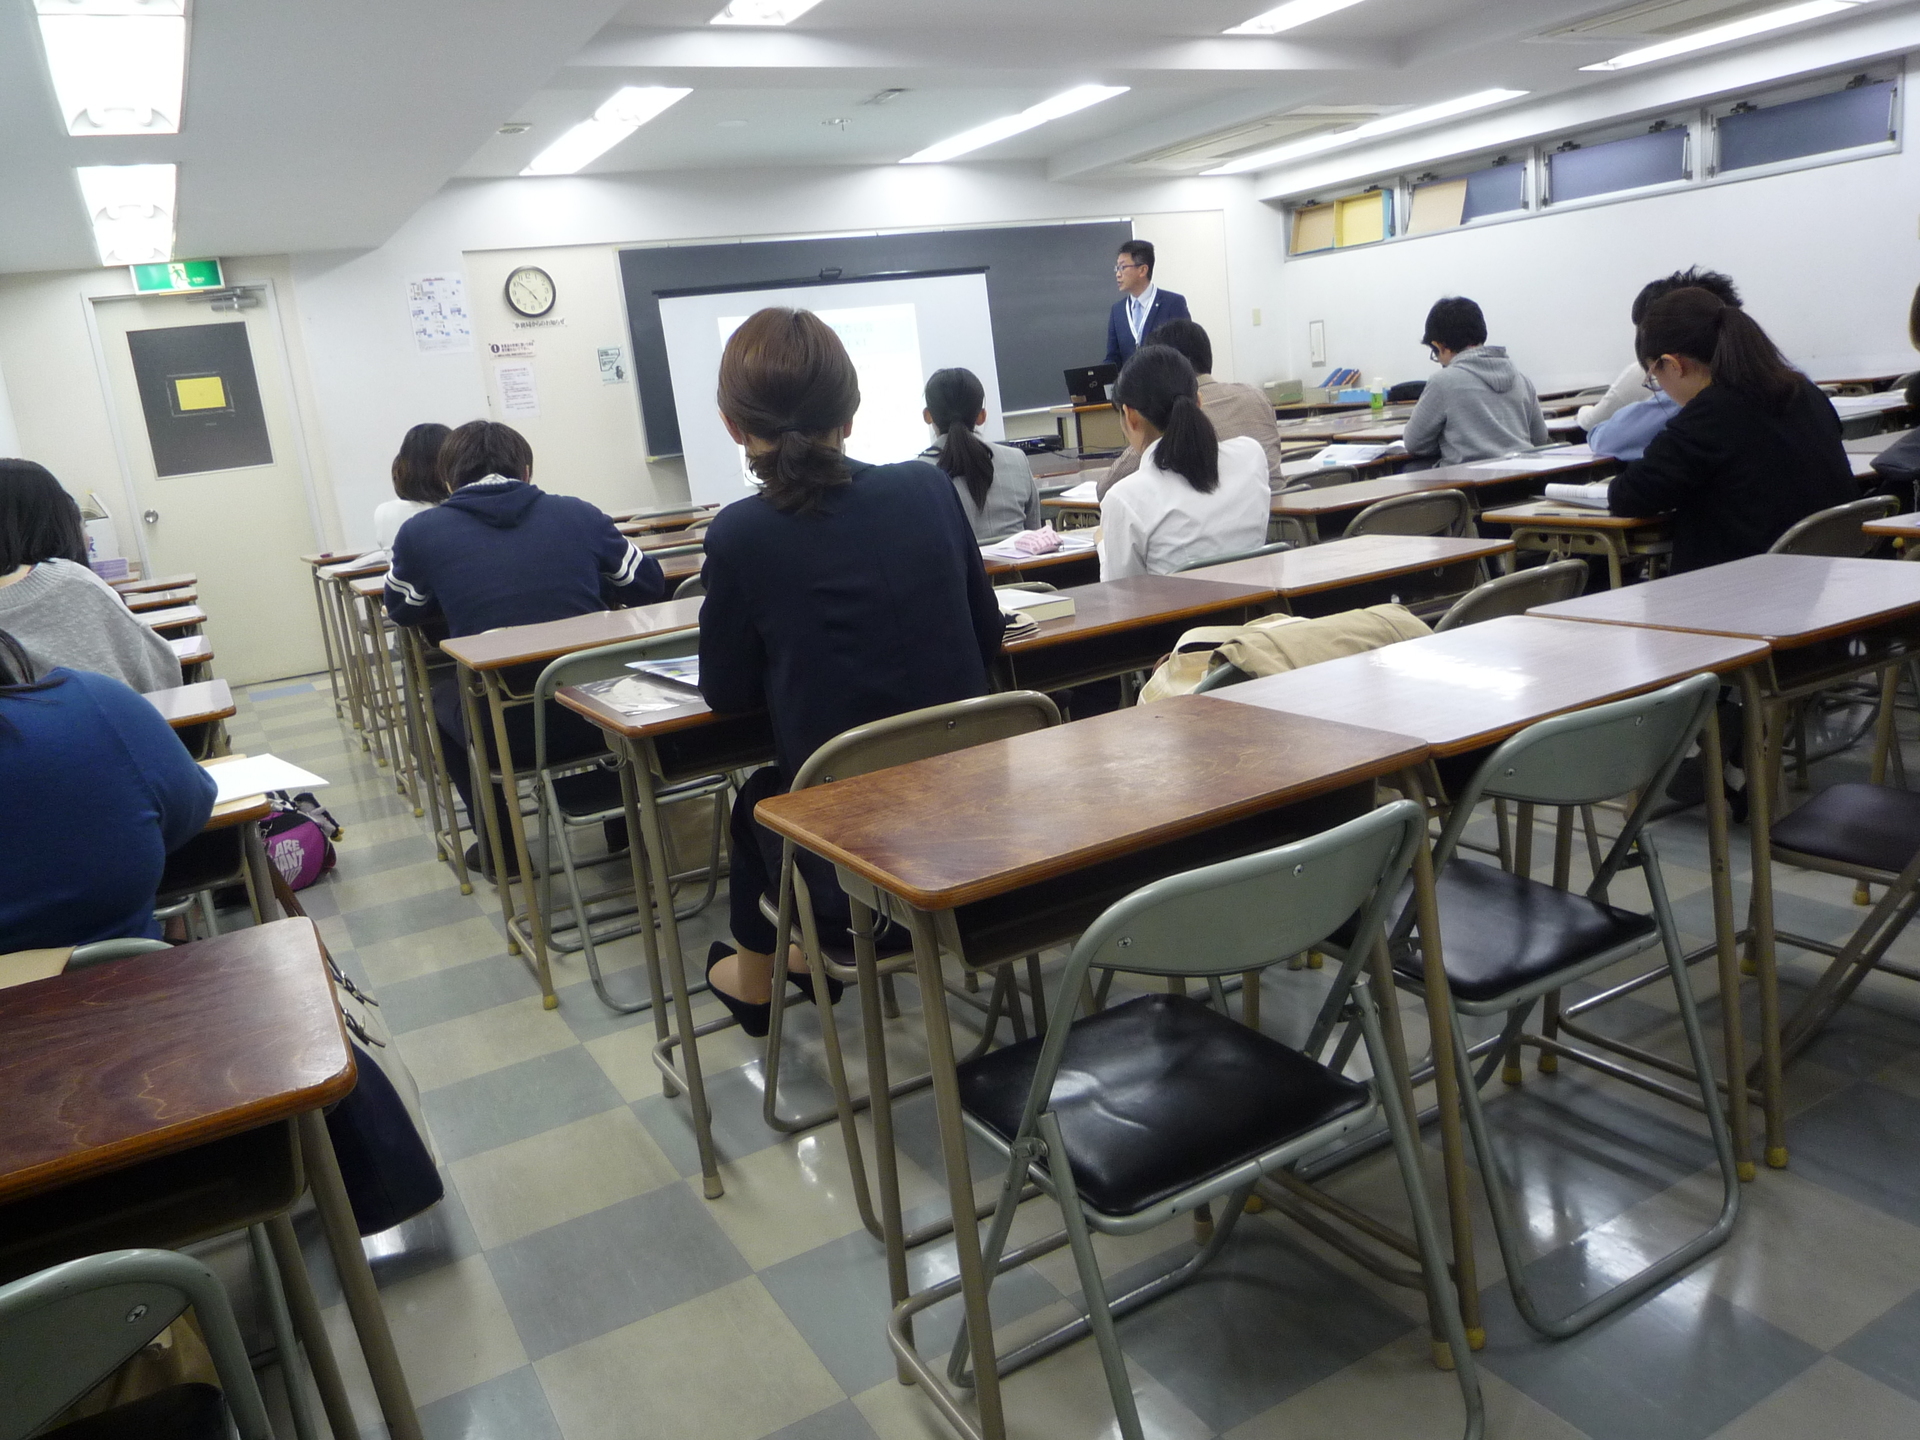 埼玉県 さいたま市教育委員会説明会を行いました 東京アカデミー大宮校 公務員 教員 各種国家試験対策 のブログ